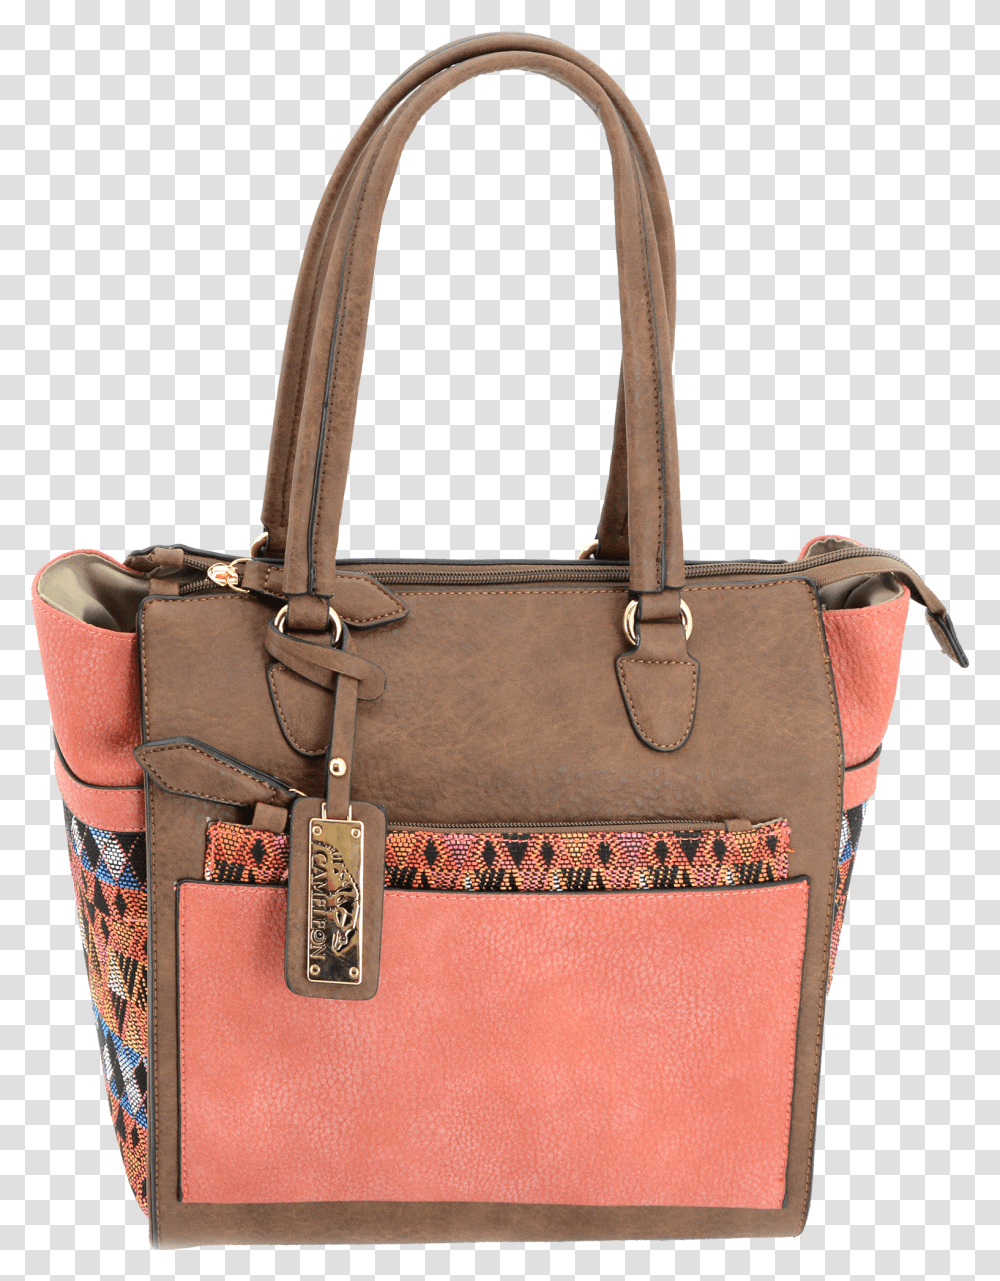 Handbag, Accessories, Accessory, Purse, Tote Bag Transparent Png